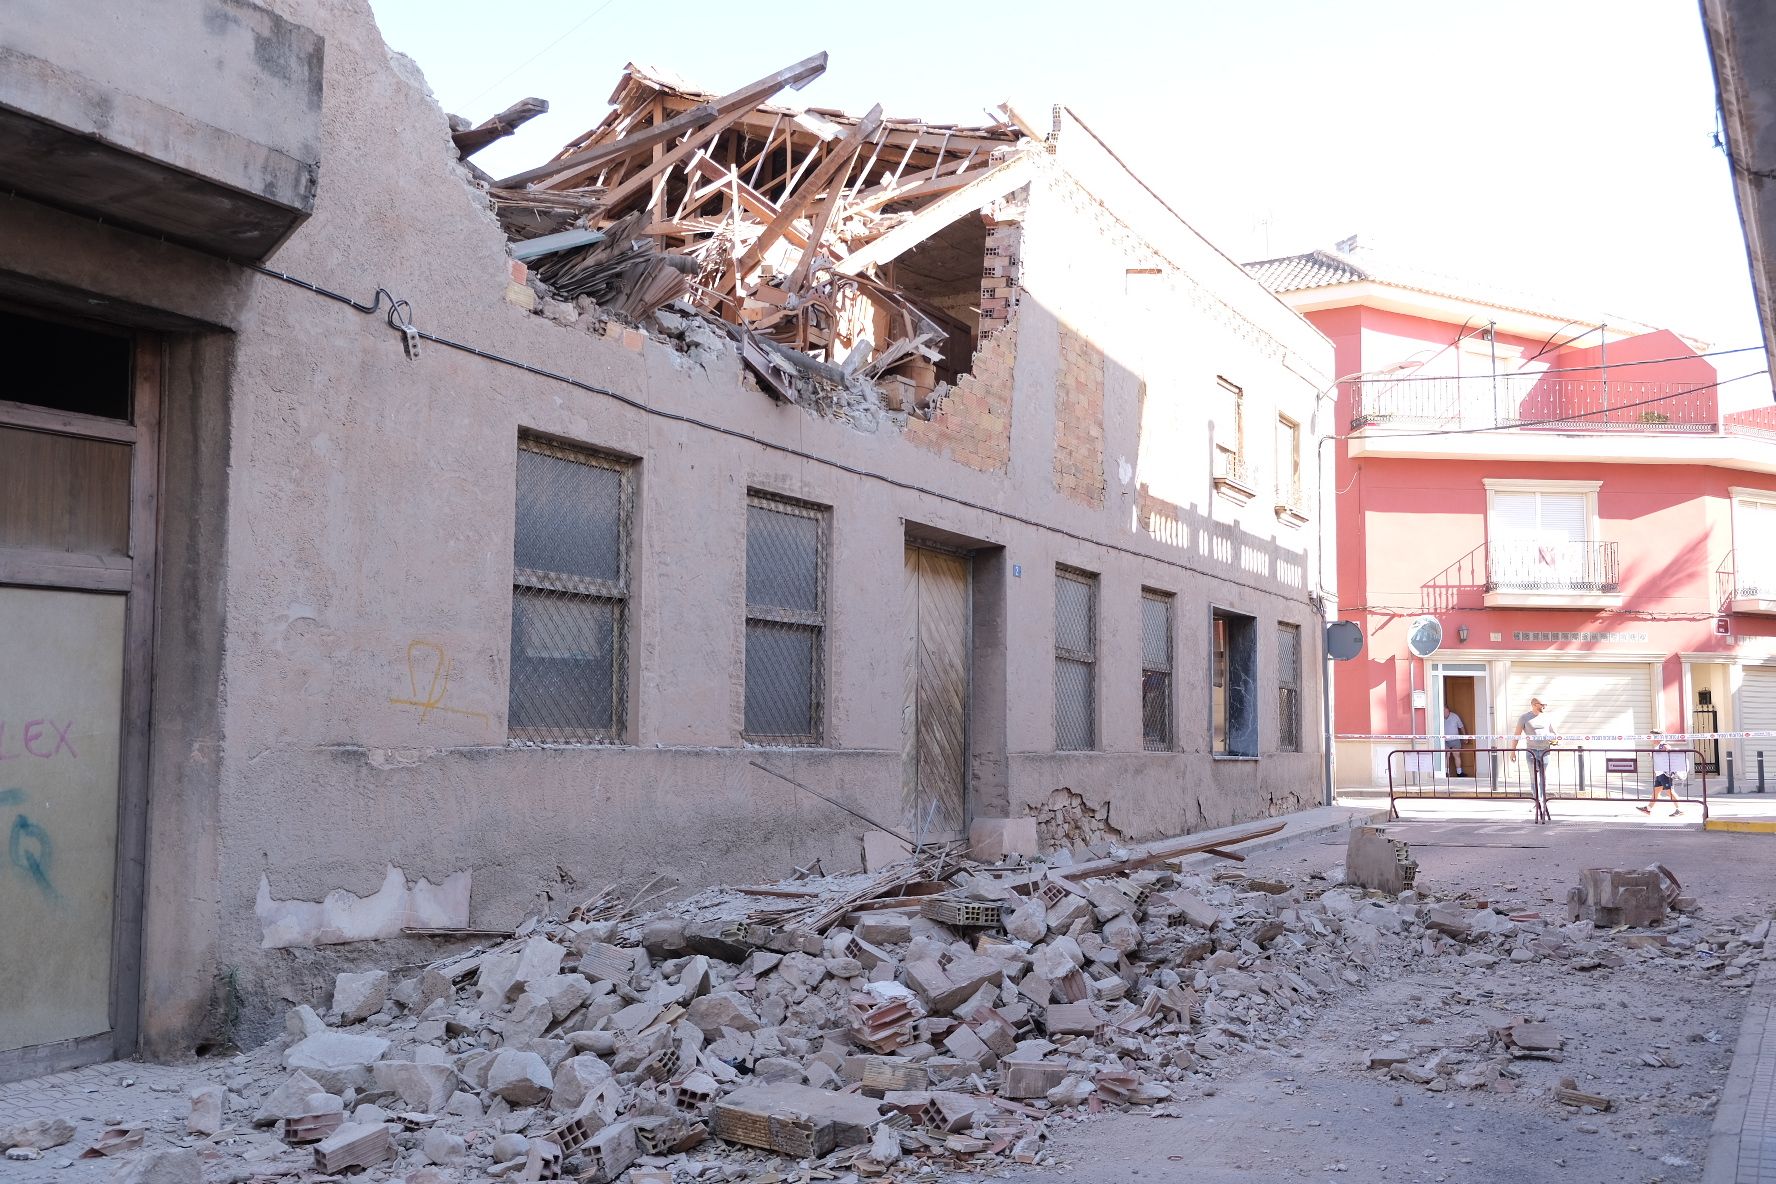 Galería derrumbe de la fachada de una vivienda calle Miguel Hernández Aspe